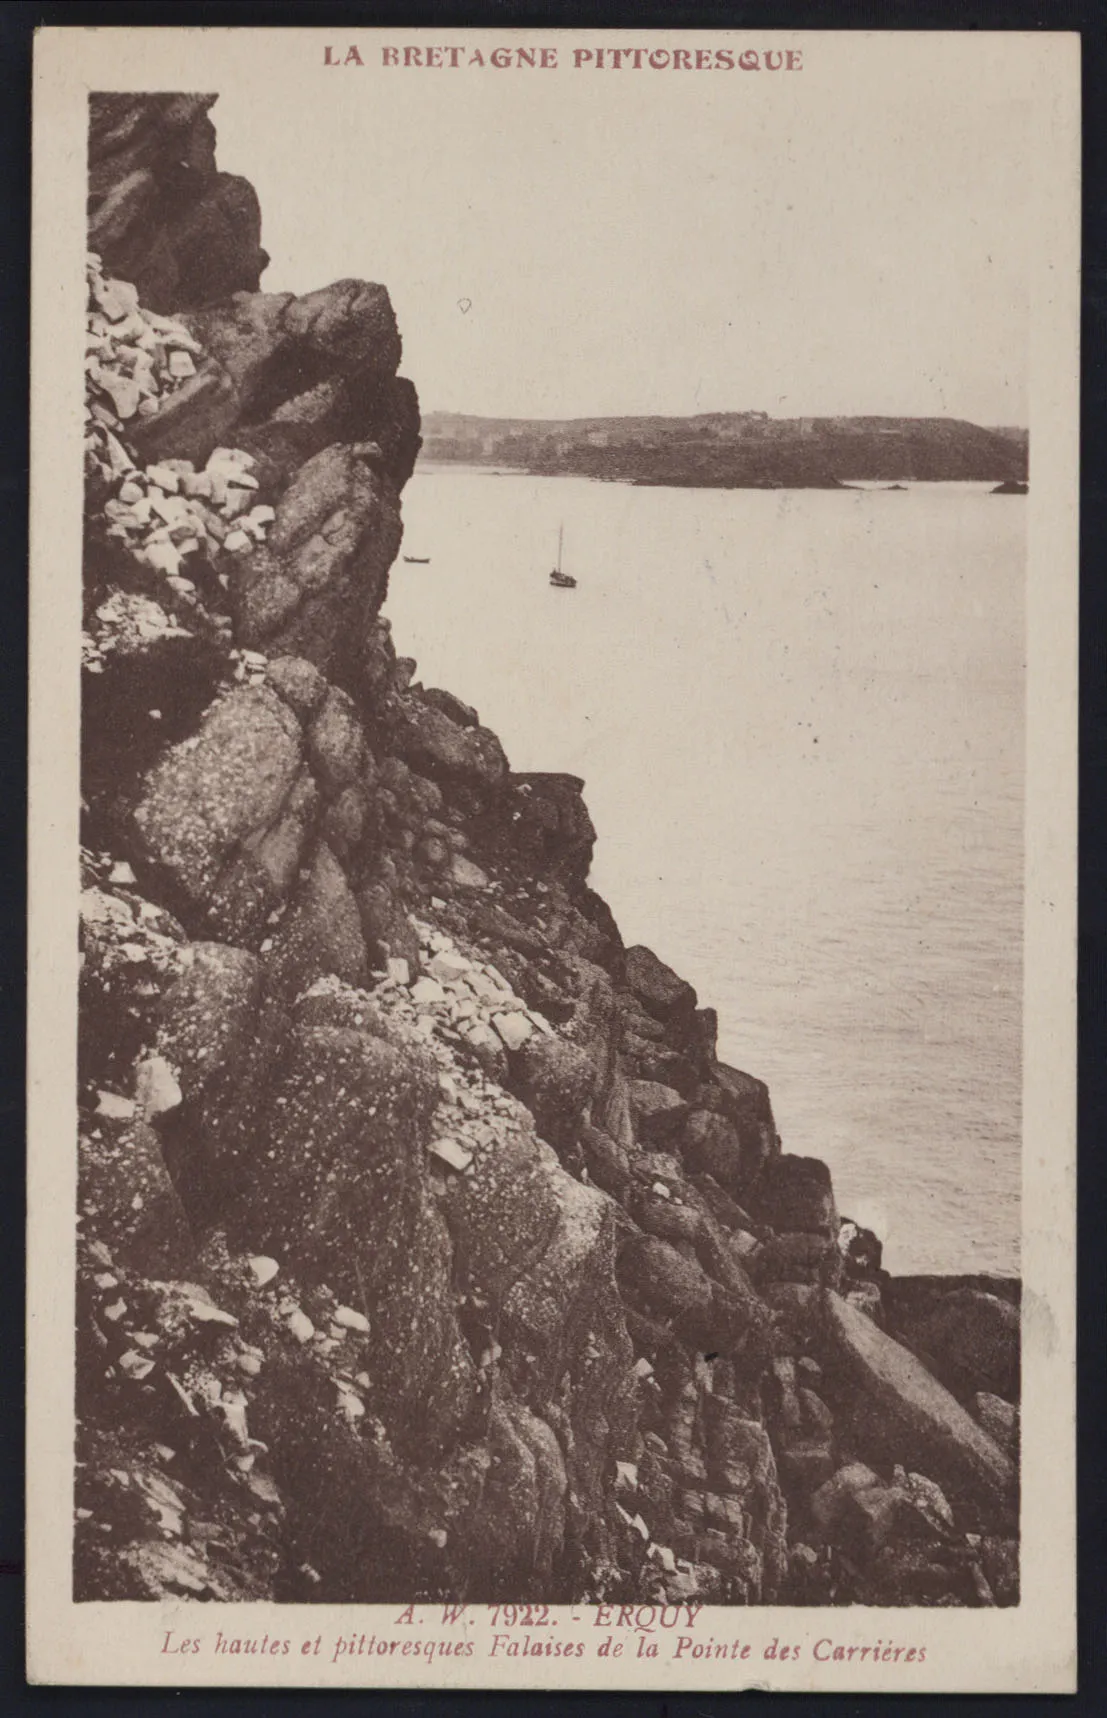 Photo showing: Les hautes et pittoresques falaises de la Pointe des Carrières.